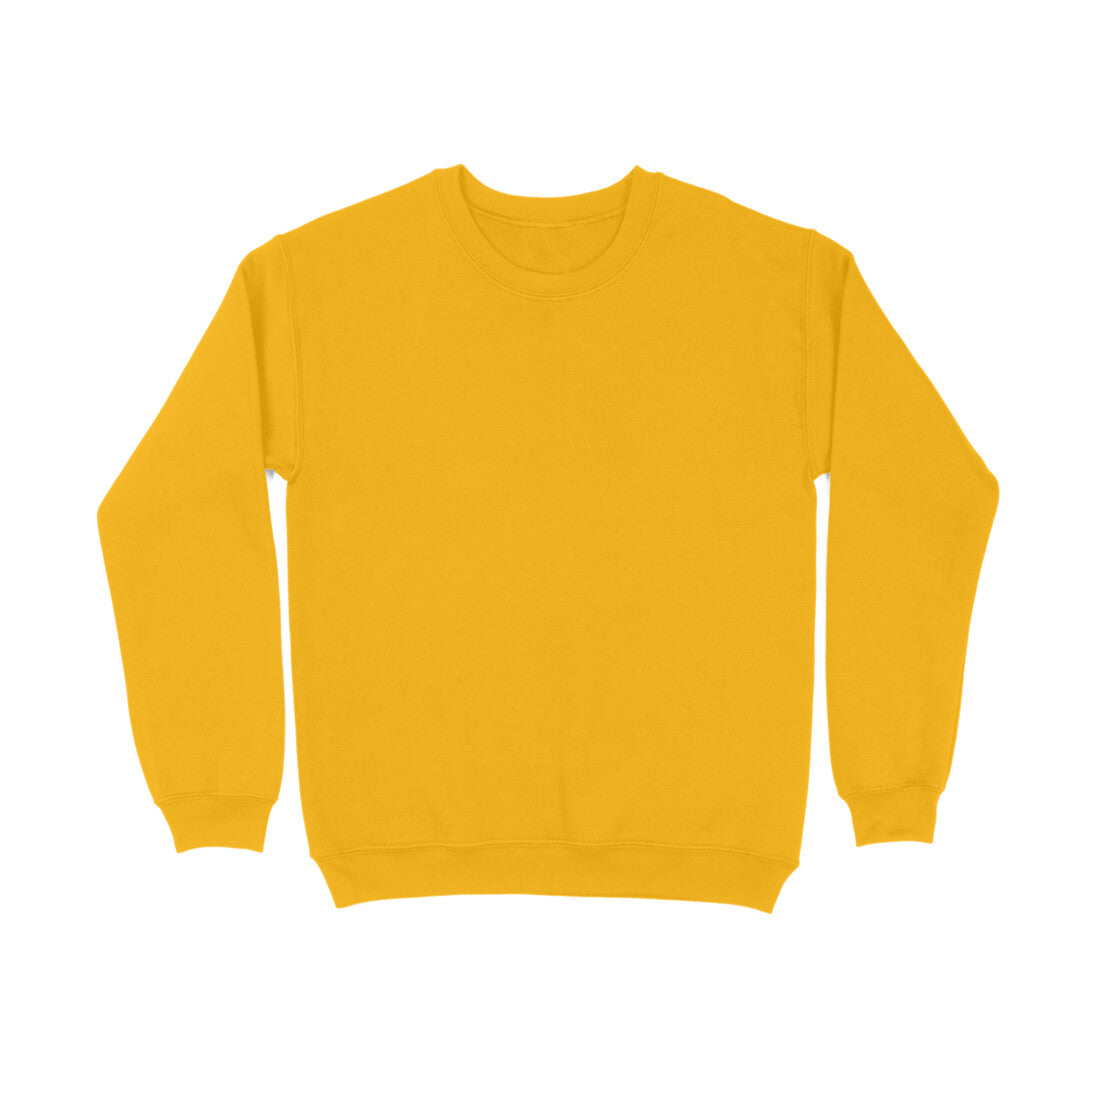 Solid Fleece Sweatshirts